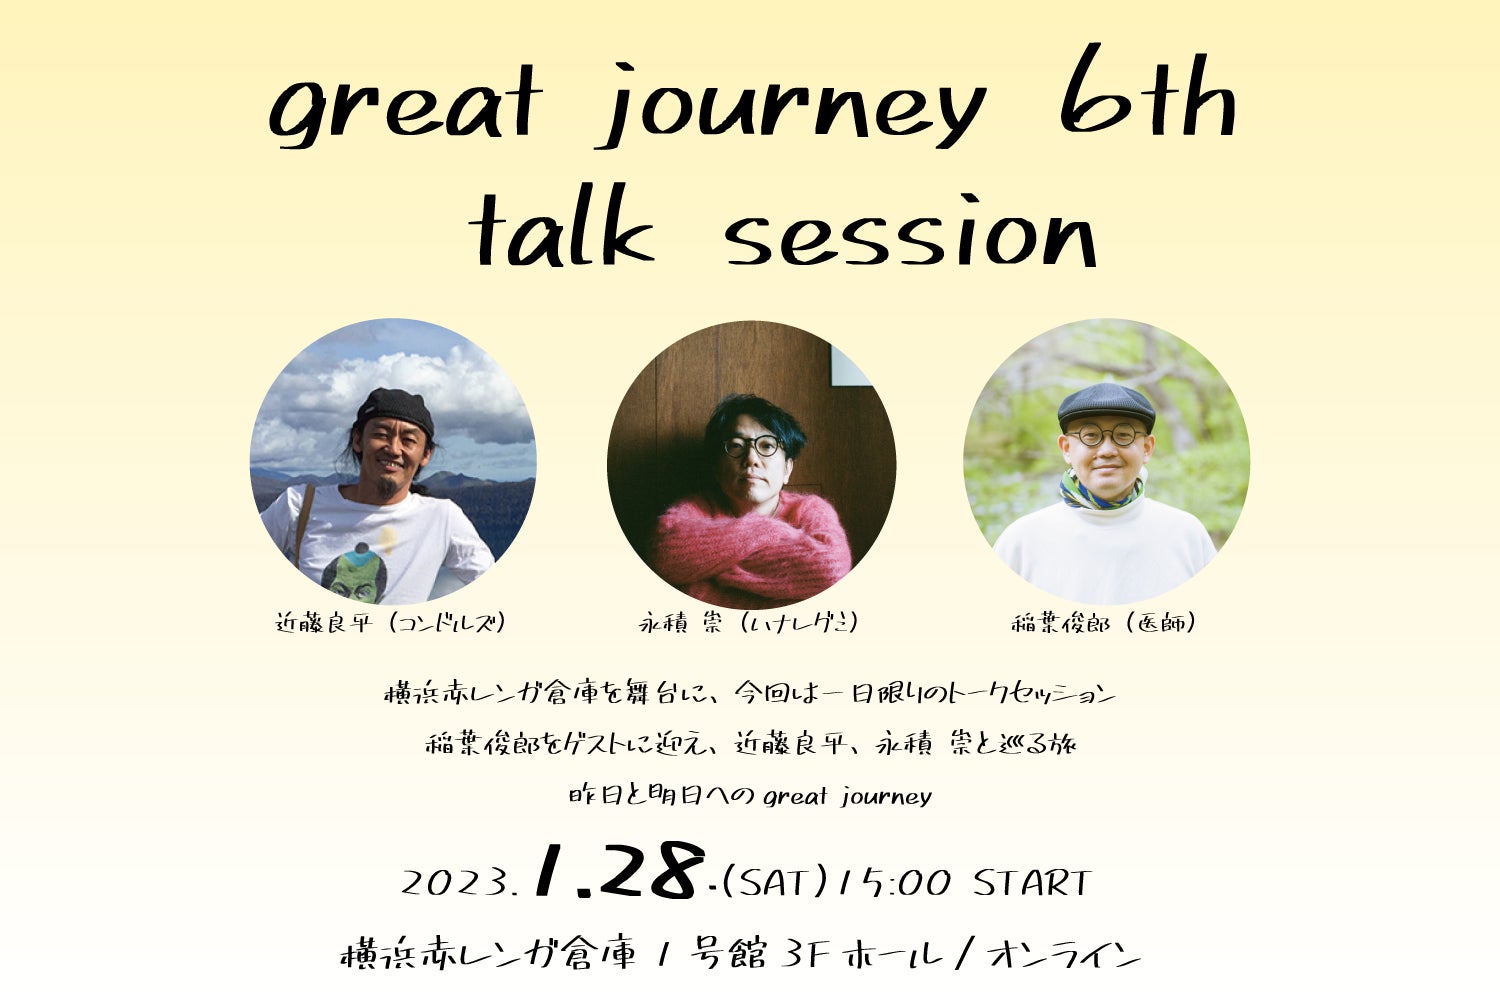 近藤良平（コンドルズ）×永積 崇（ハナレグミ）with 稲葉俊郎（医師）『great journey 6th – talk session』開催決定！